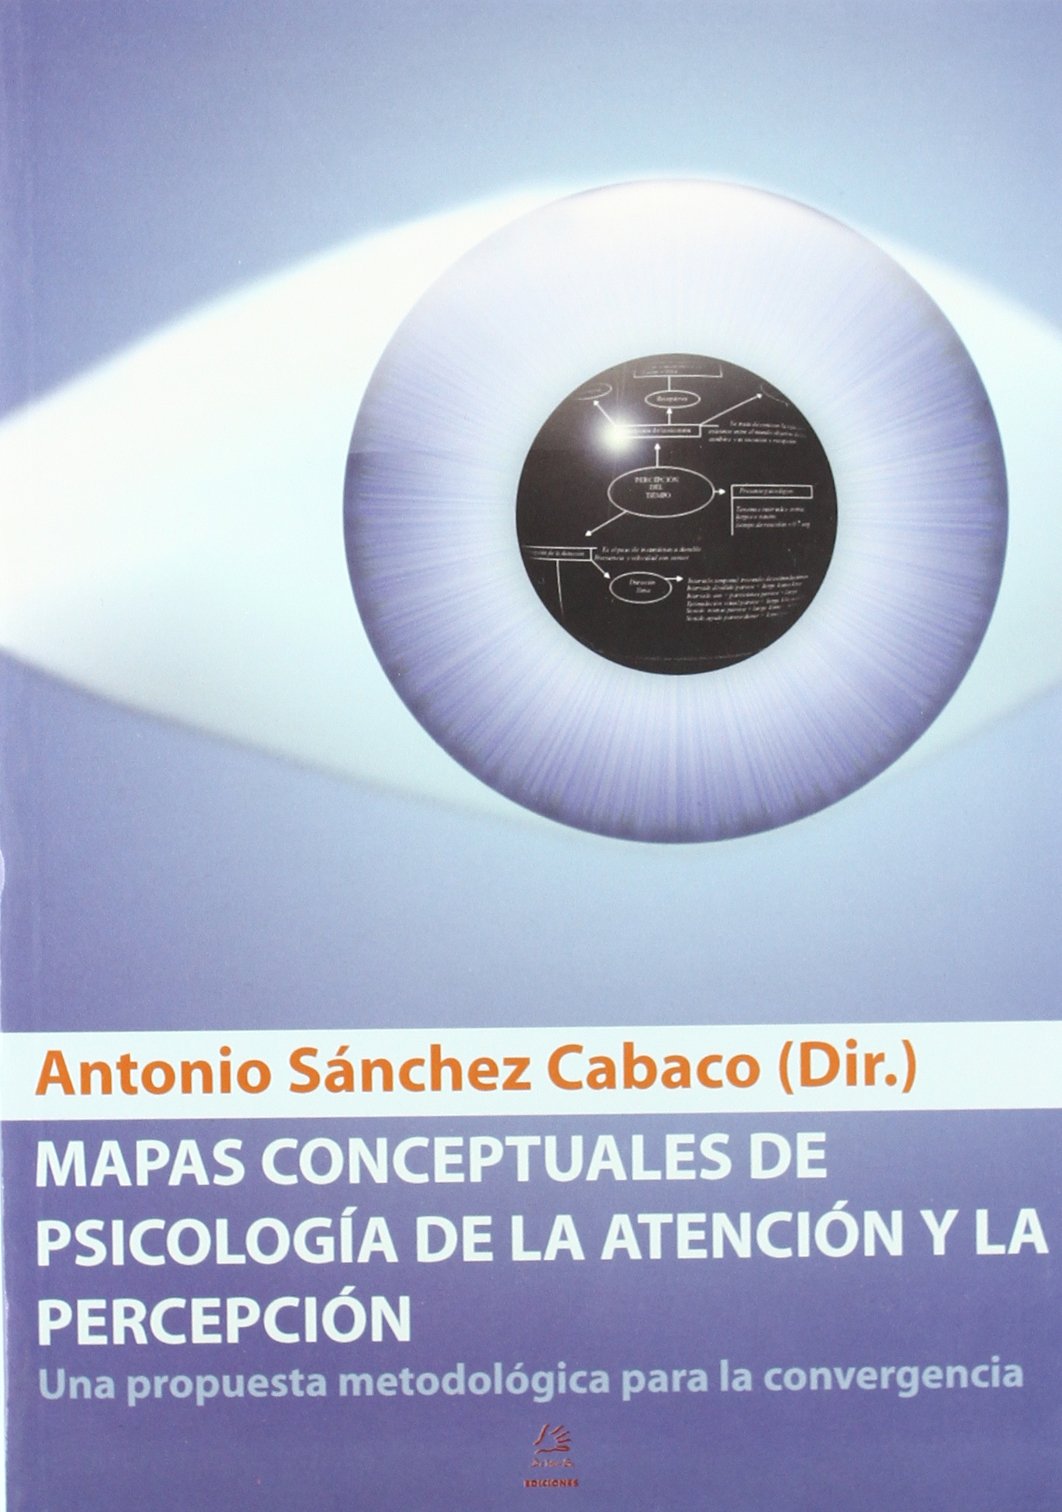 Imagen de portada del libro Mapas conceptuales de psicología de la atención y la percepción